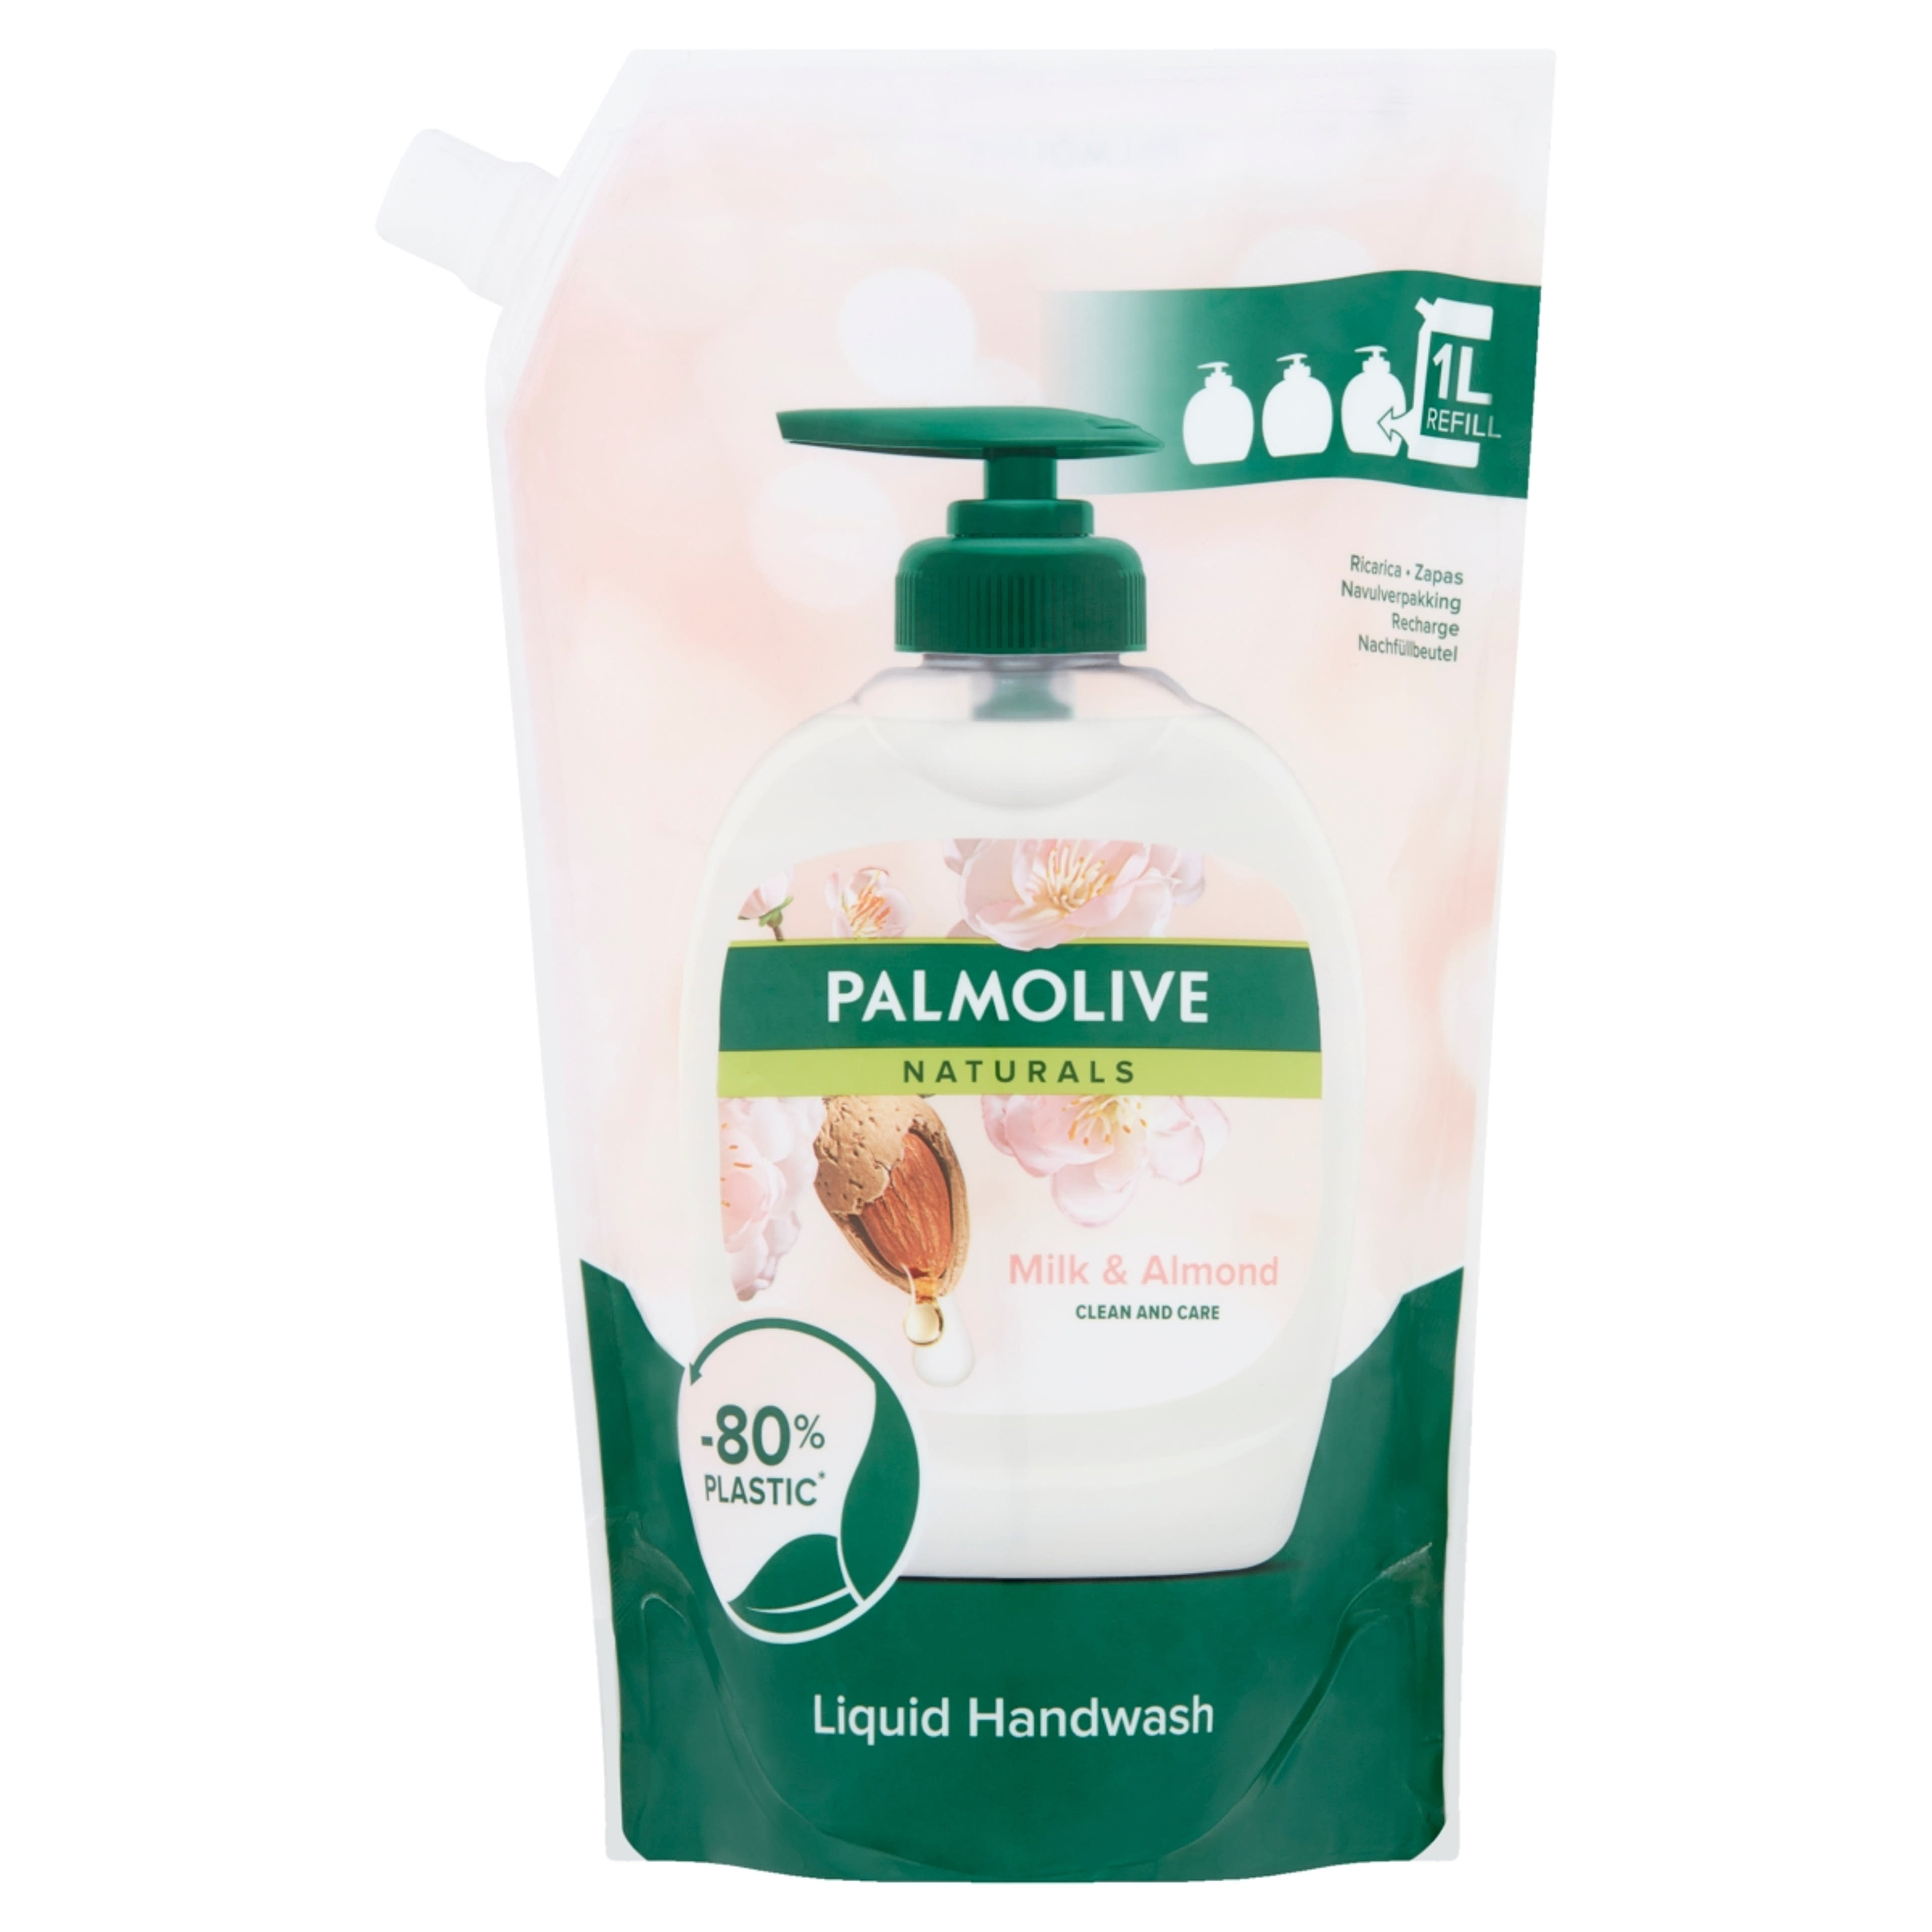 Palmolive Naturals Milk & Almond folyékony szappan utántöltő - 1000 ml